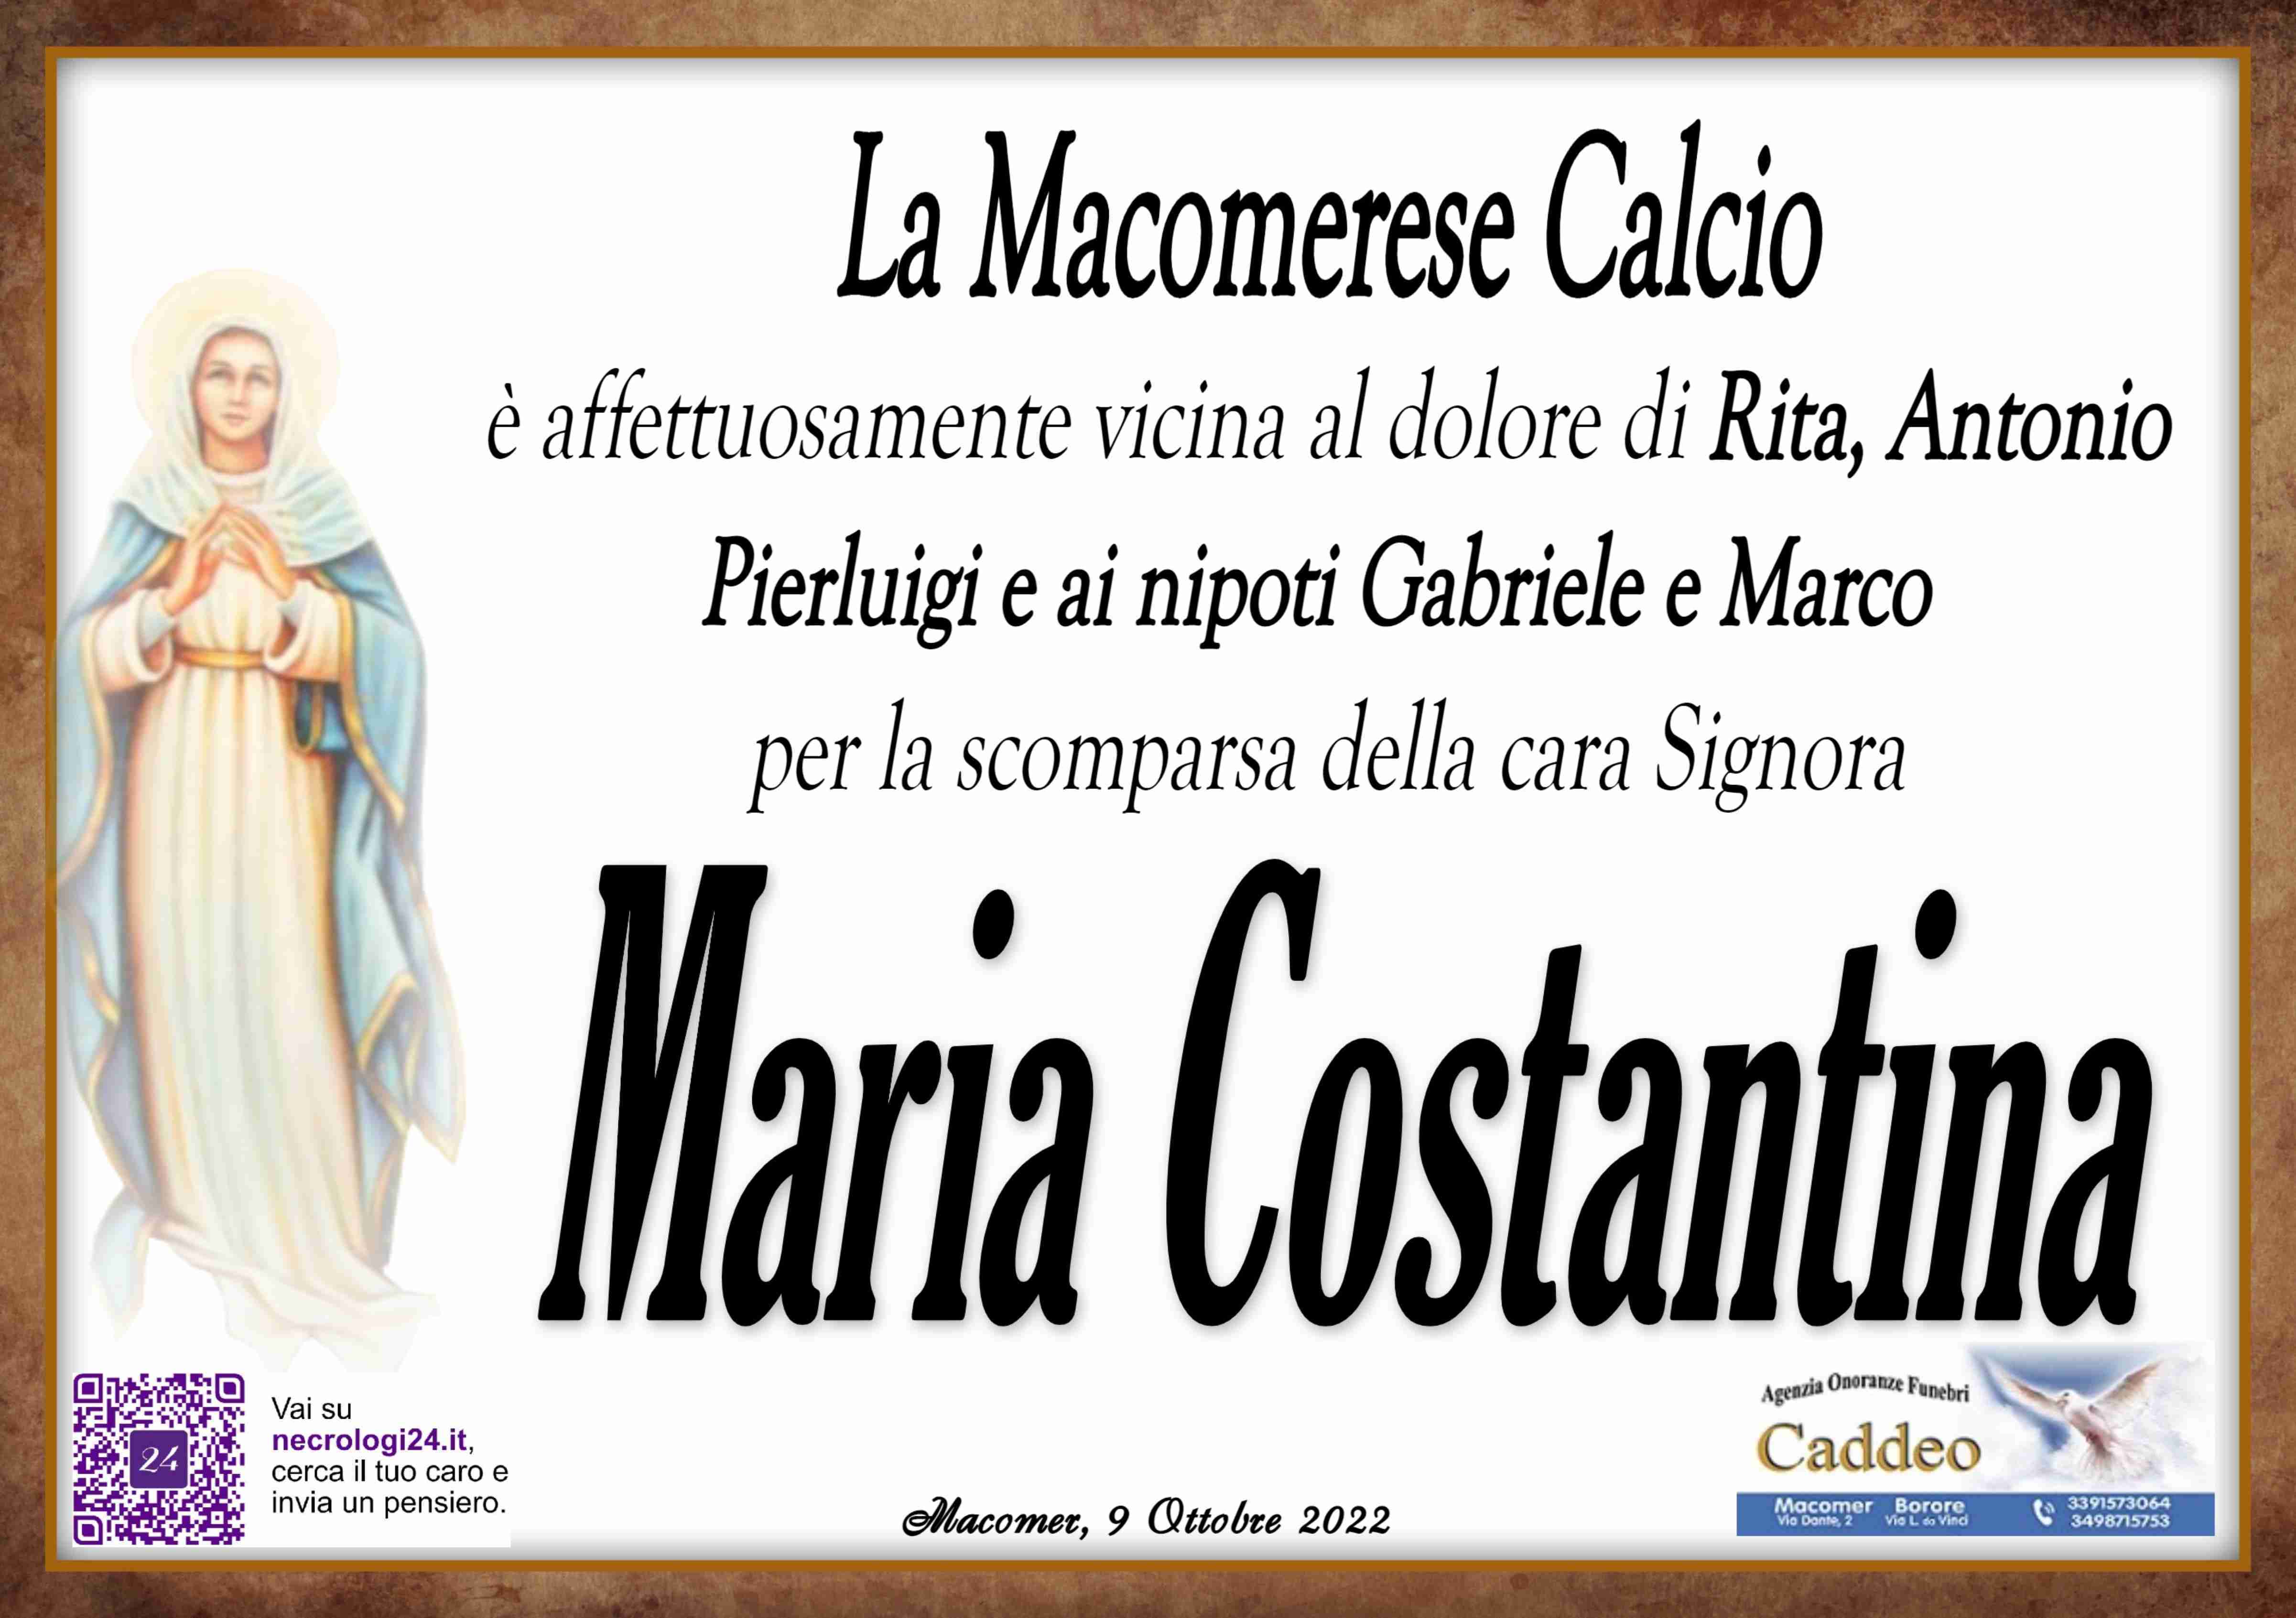 Maria Costantina Liggia